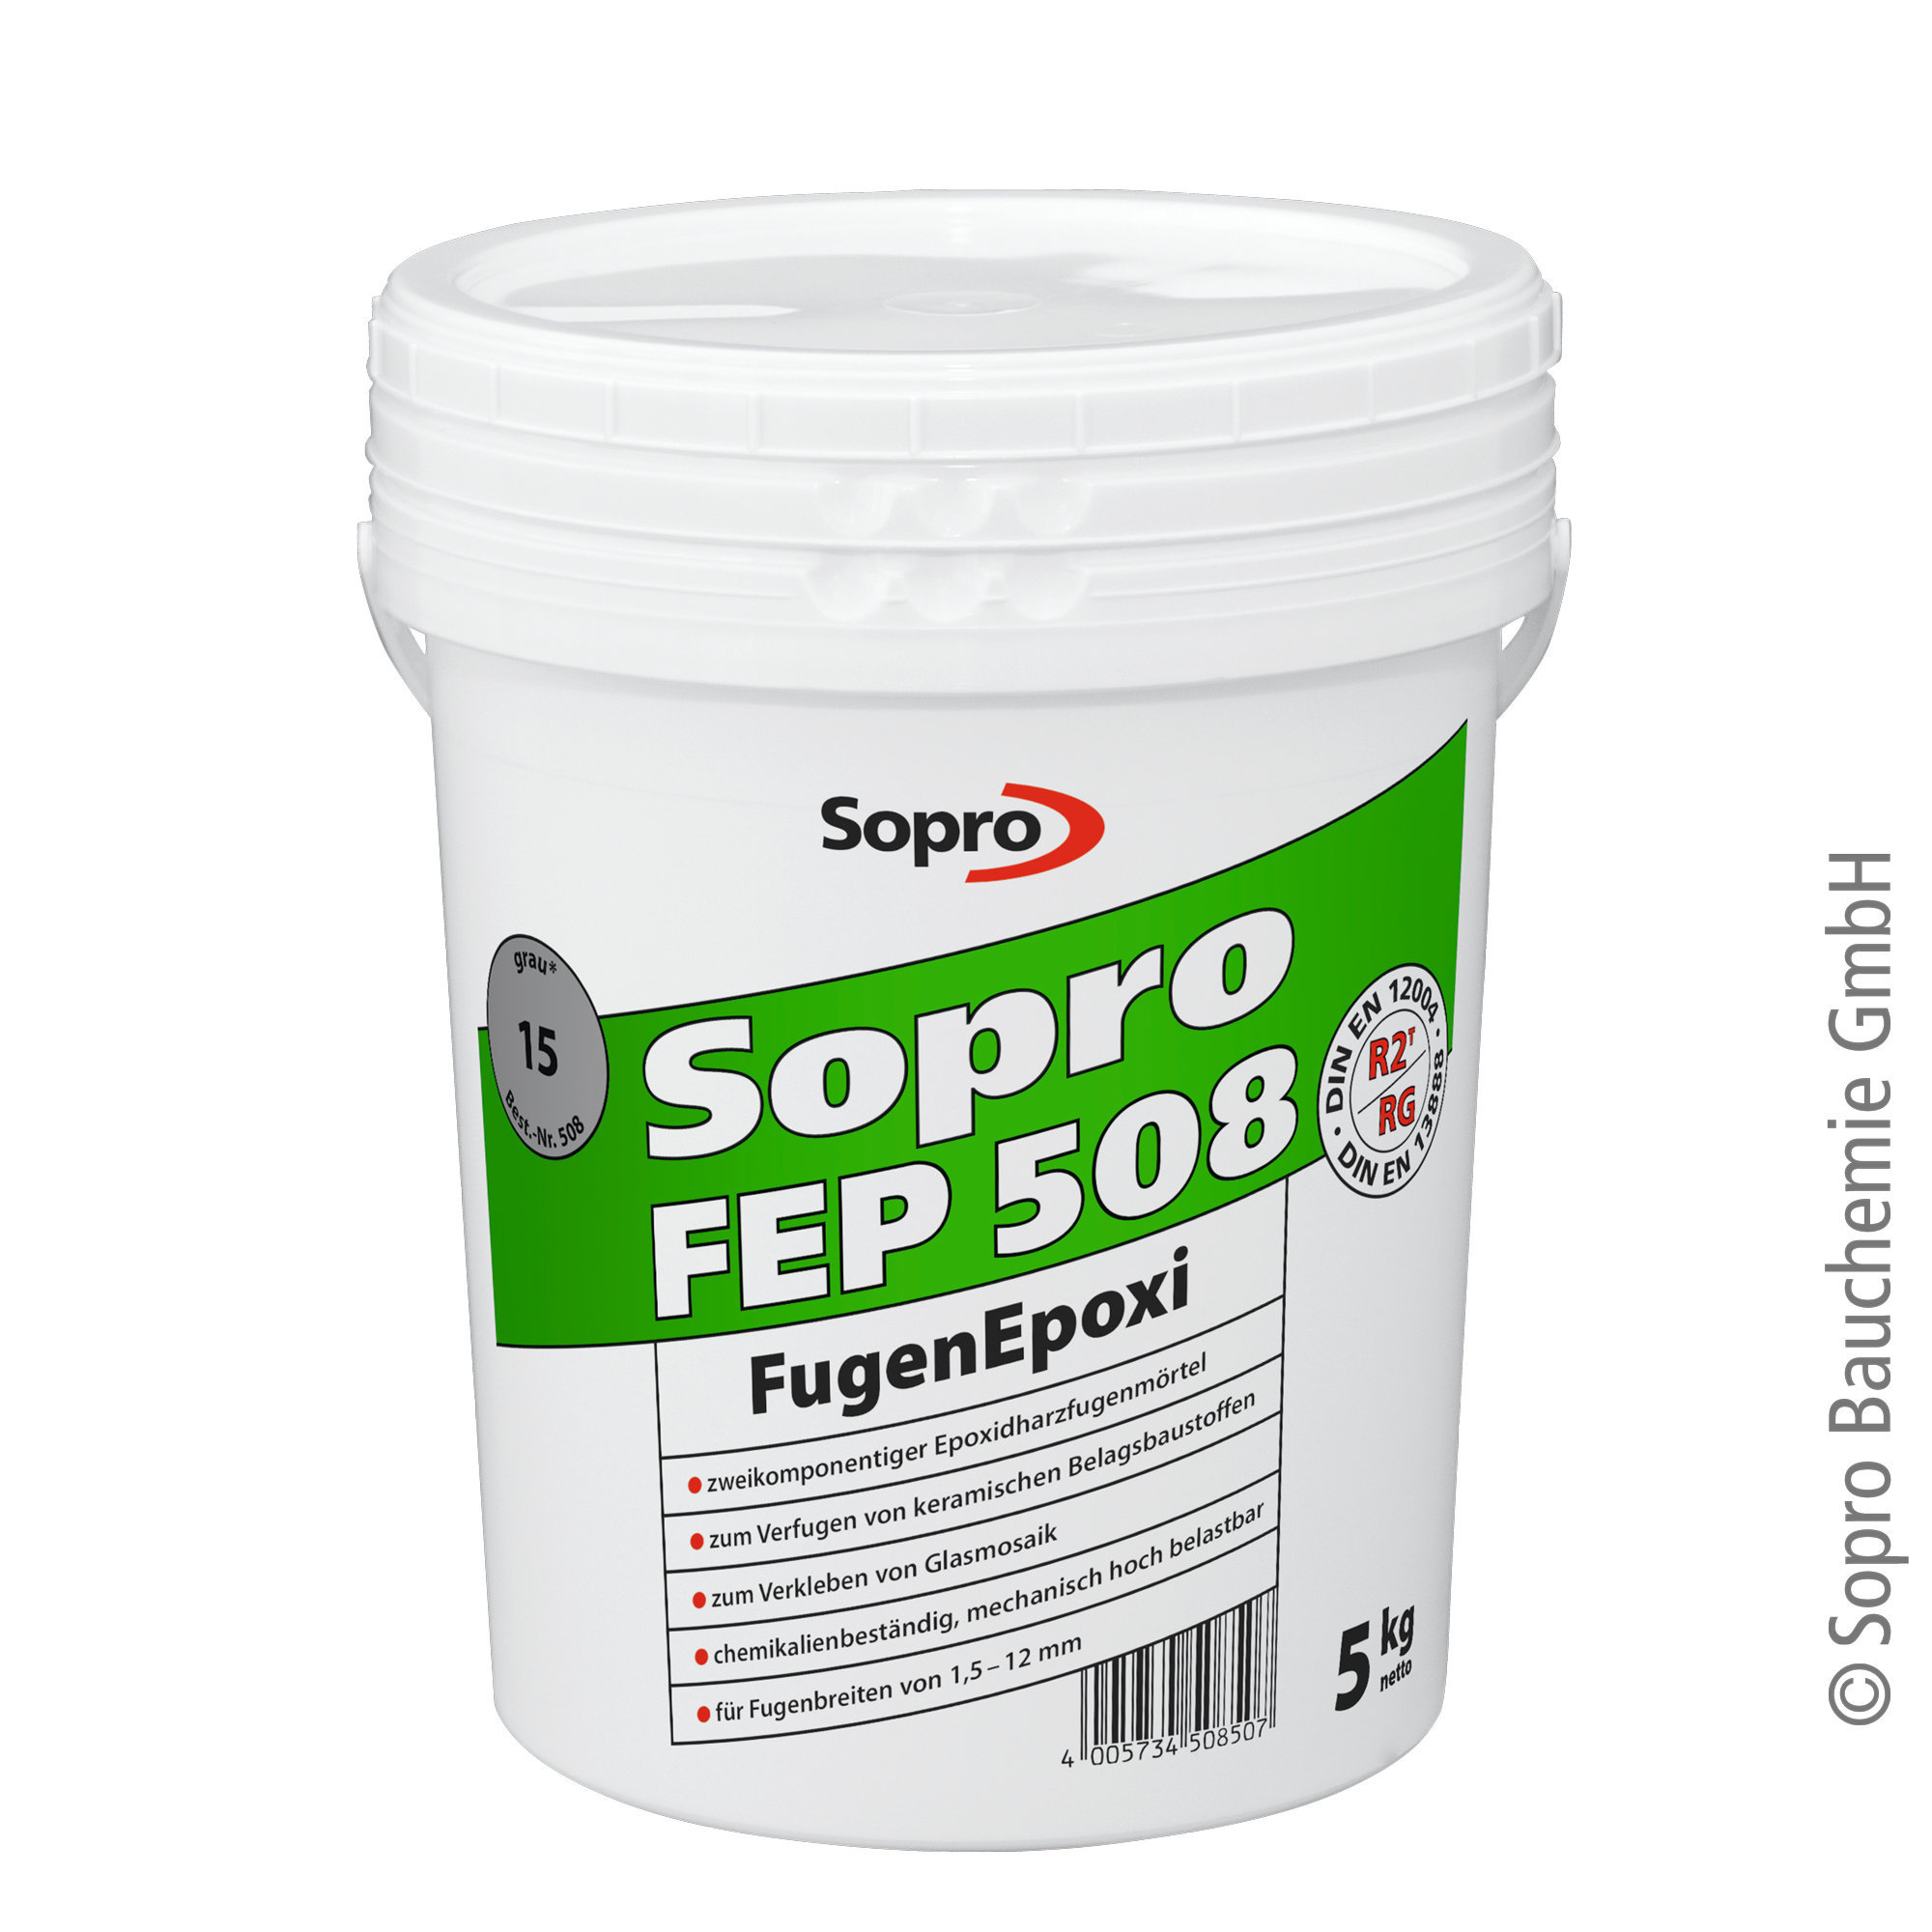 Sopro FugenEpoxi FEP 508